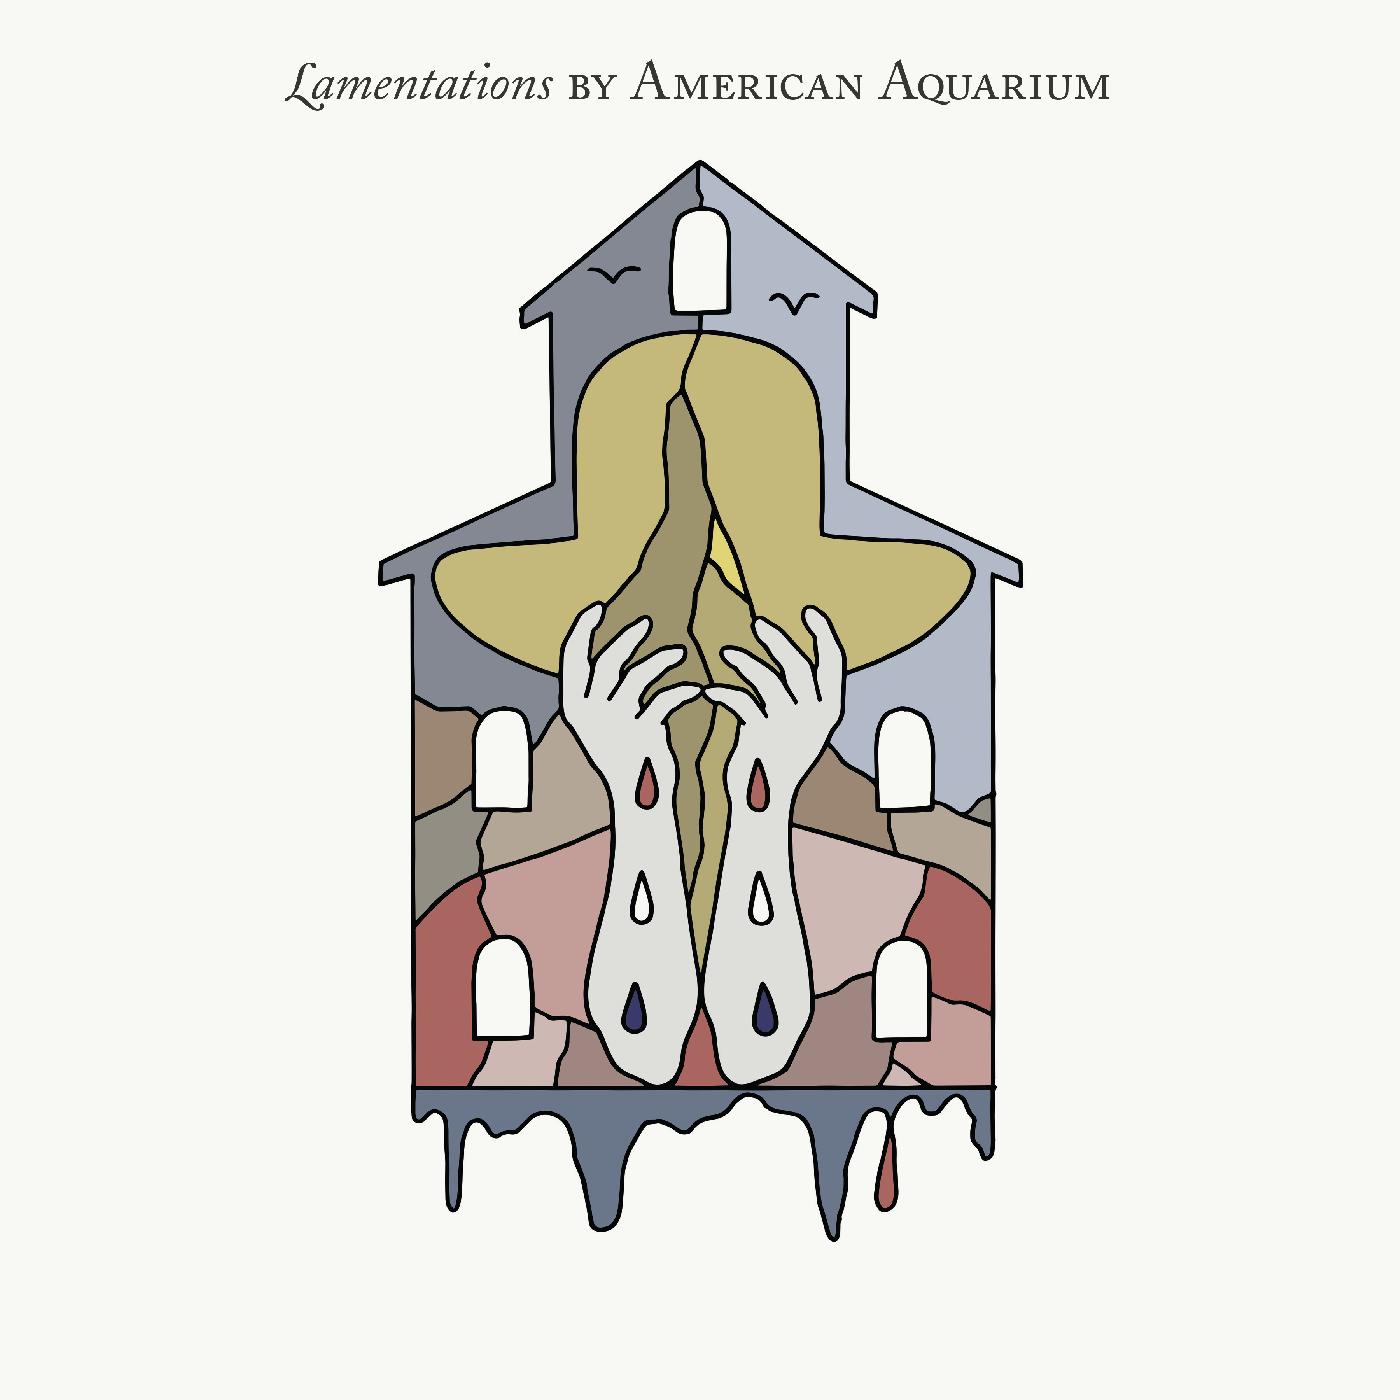 American Aquarium - Lamentations (Gold, Silver and Red Vinyl)